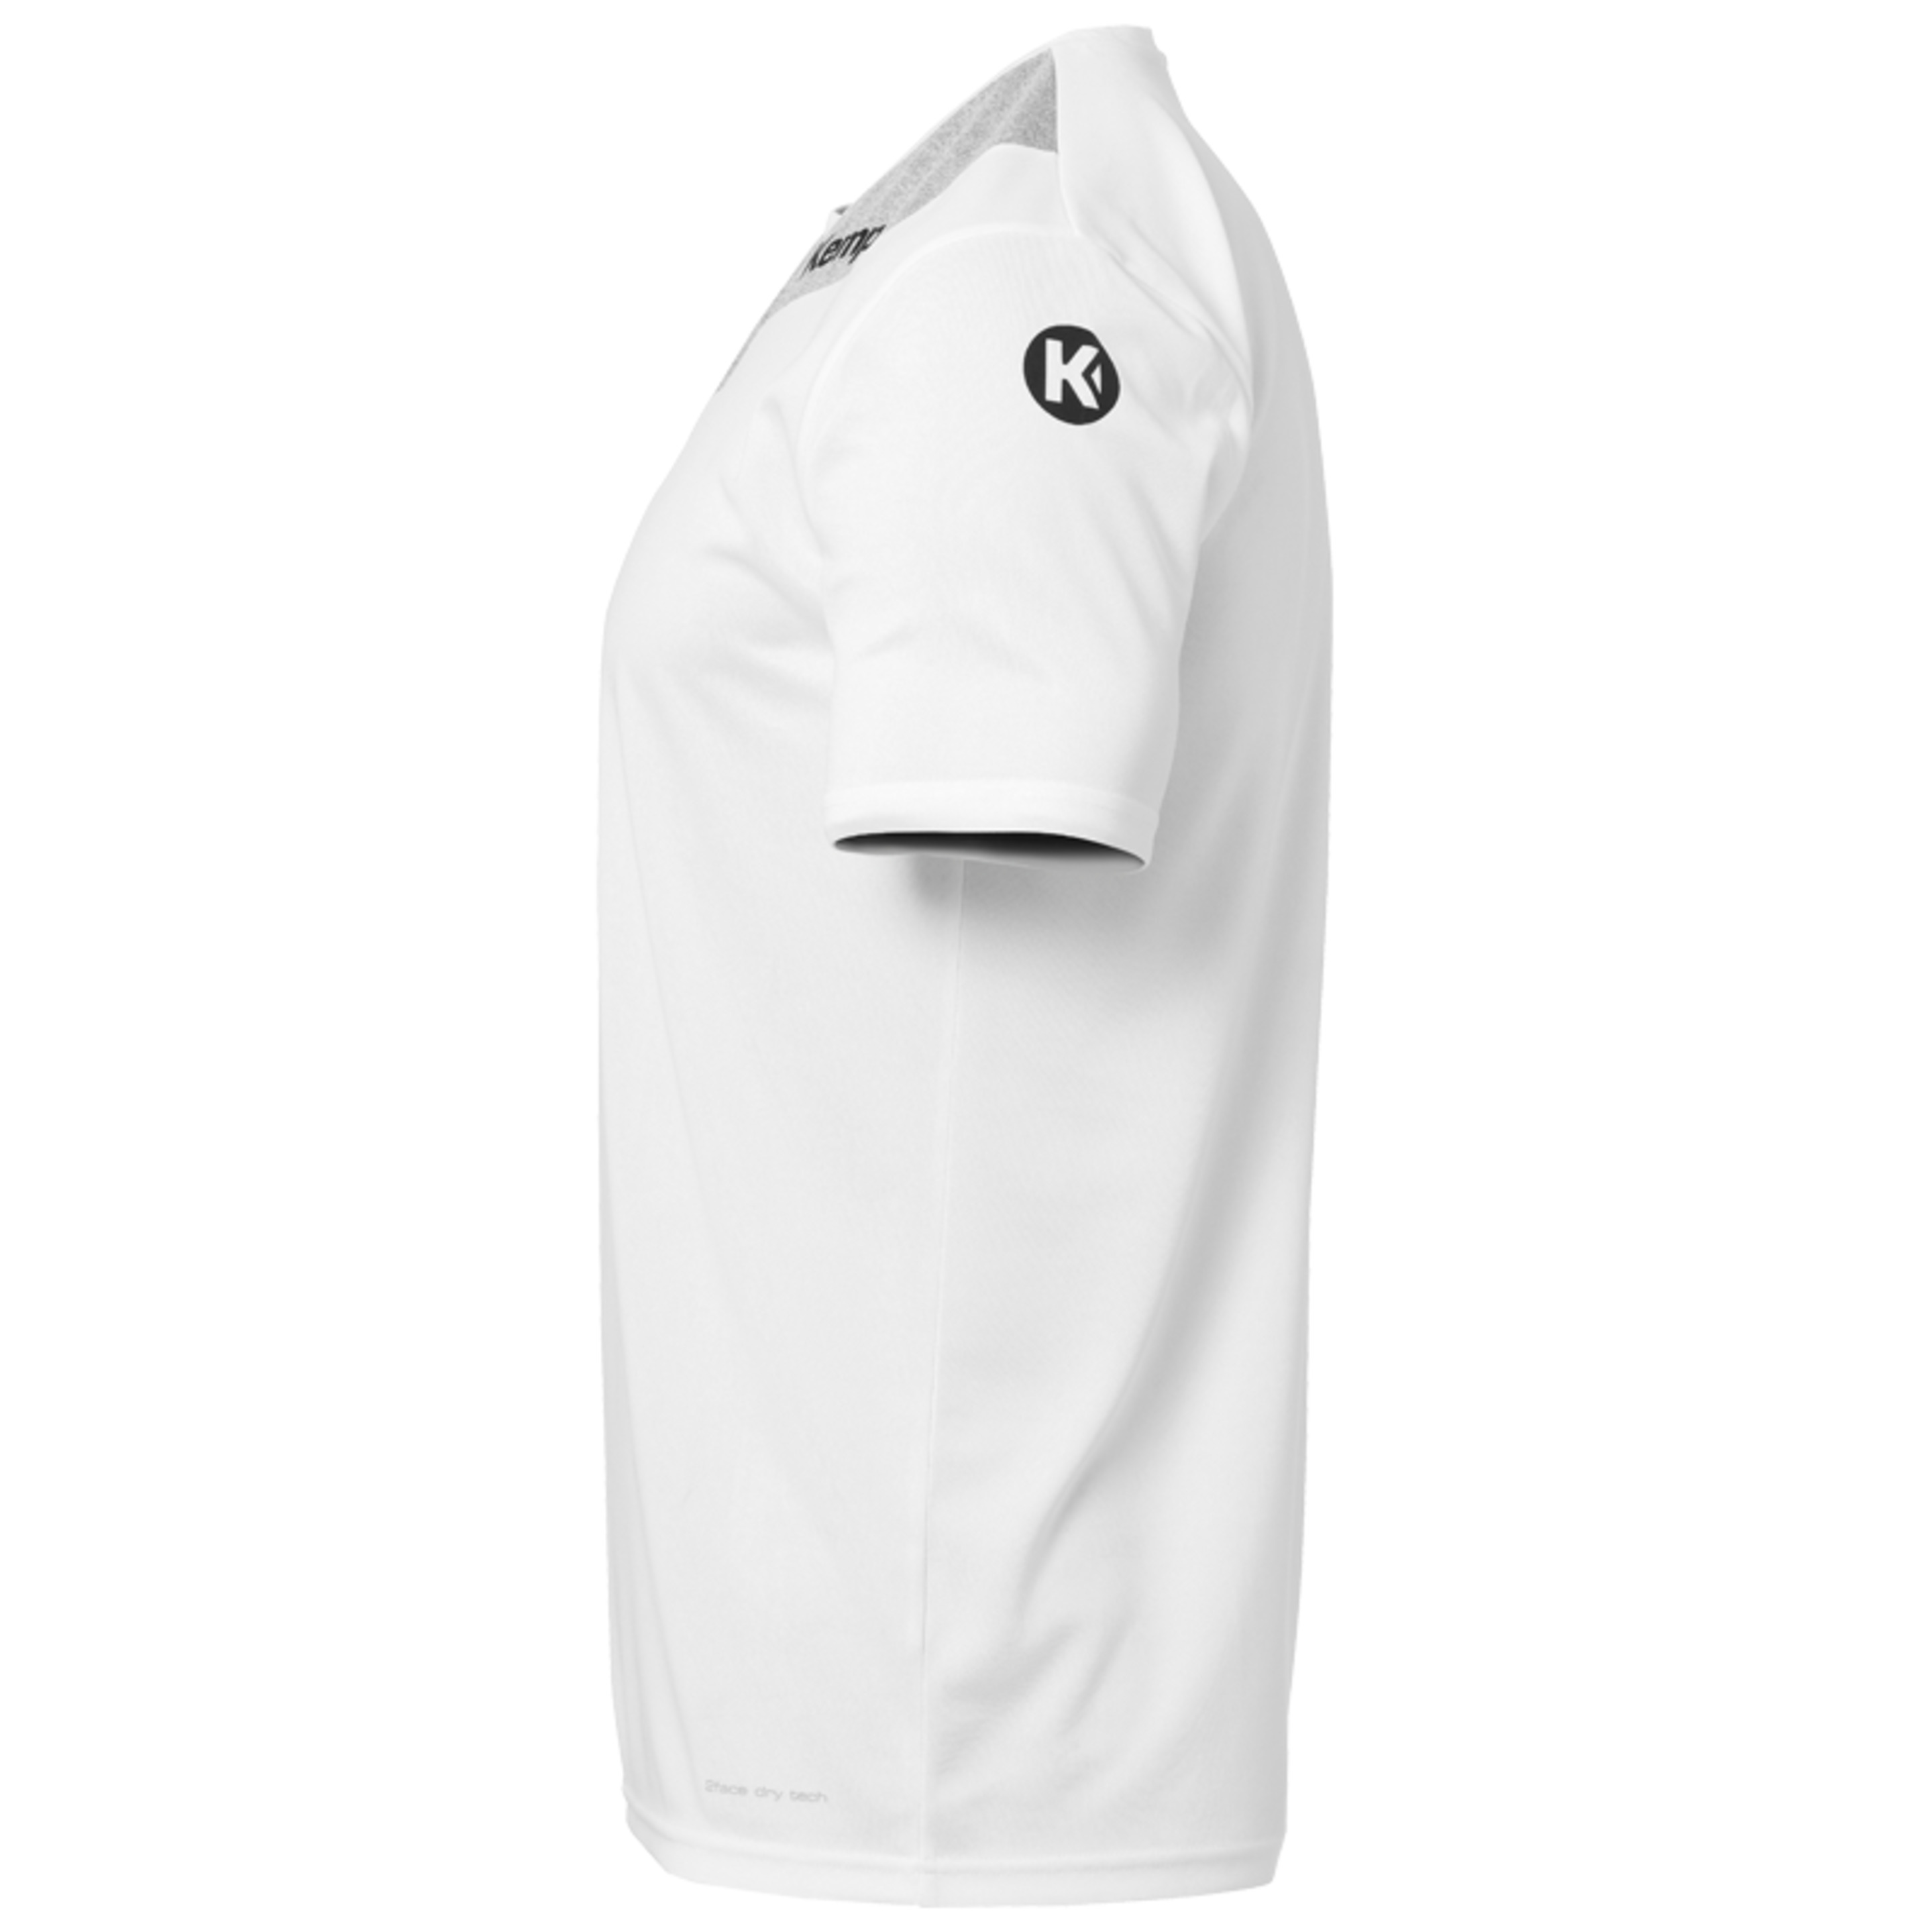 Core 2.0 Shirt Blanco/gris Oscuro Mezcla Kempa